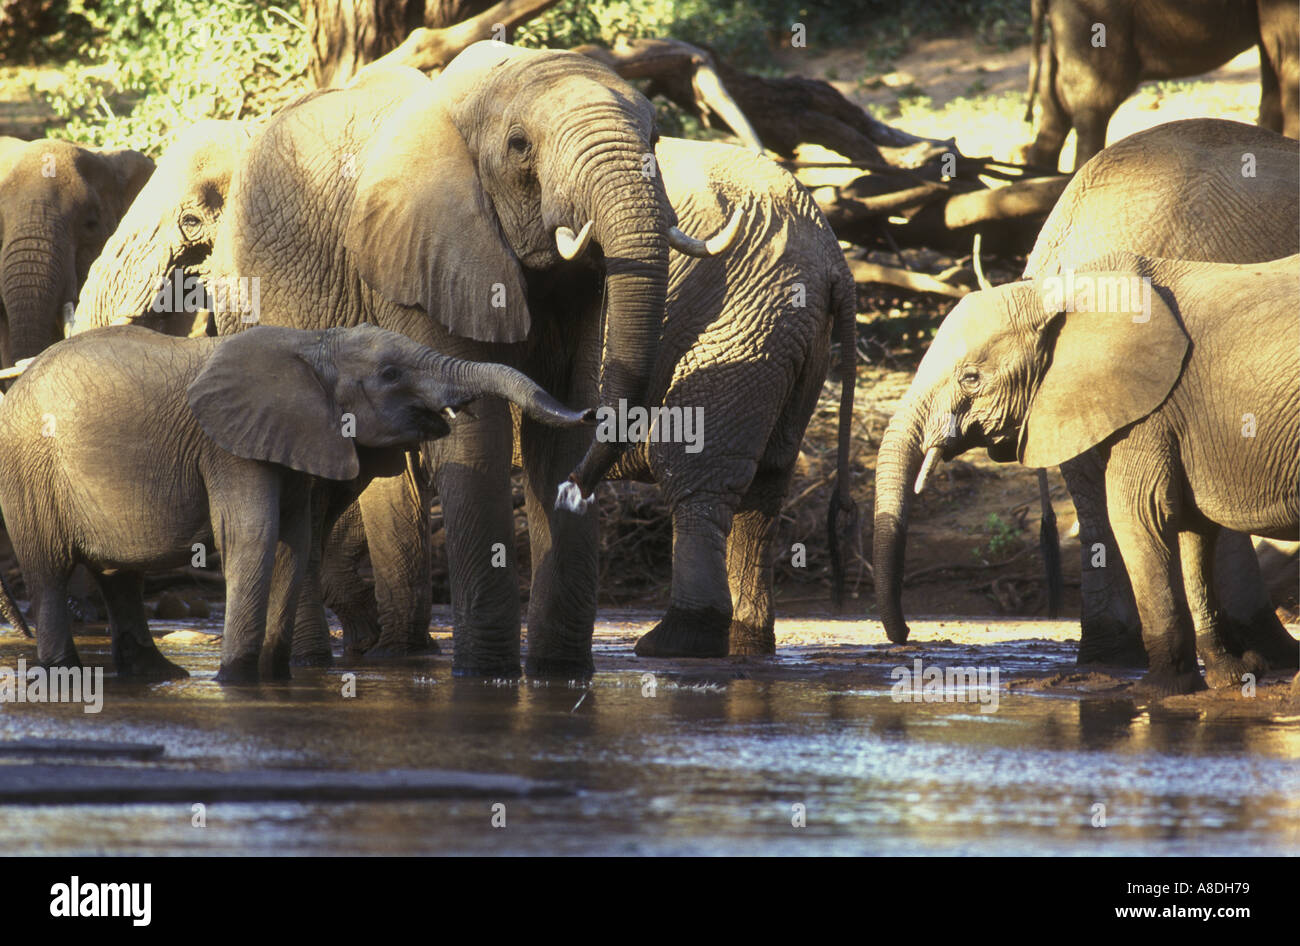 Un groupe familial de femelles et de veaux de l'éléphant de boire dans l'Uaso Nyiro dans la réserve nationale de Samburu, Kenya Afrique de l'Est Banque D'Images